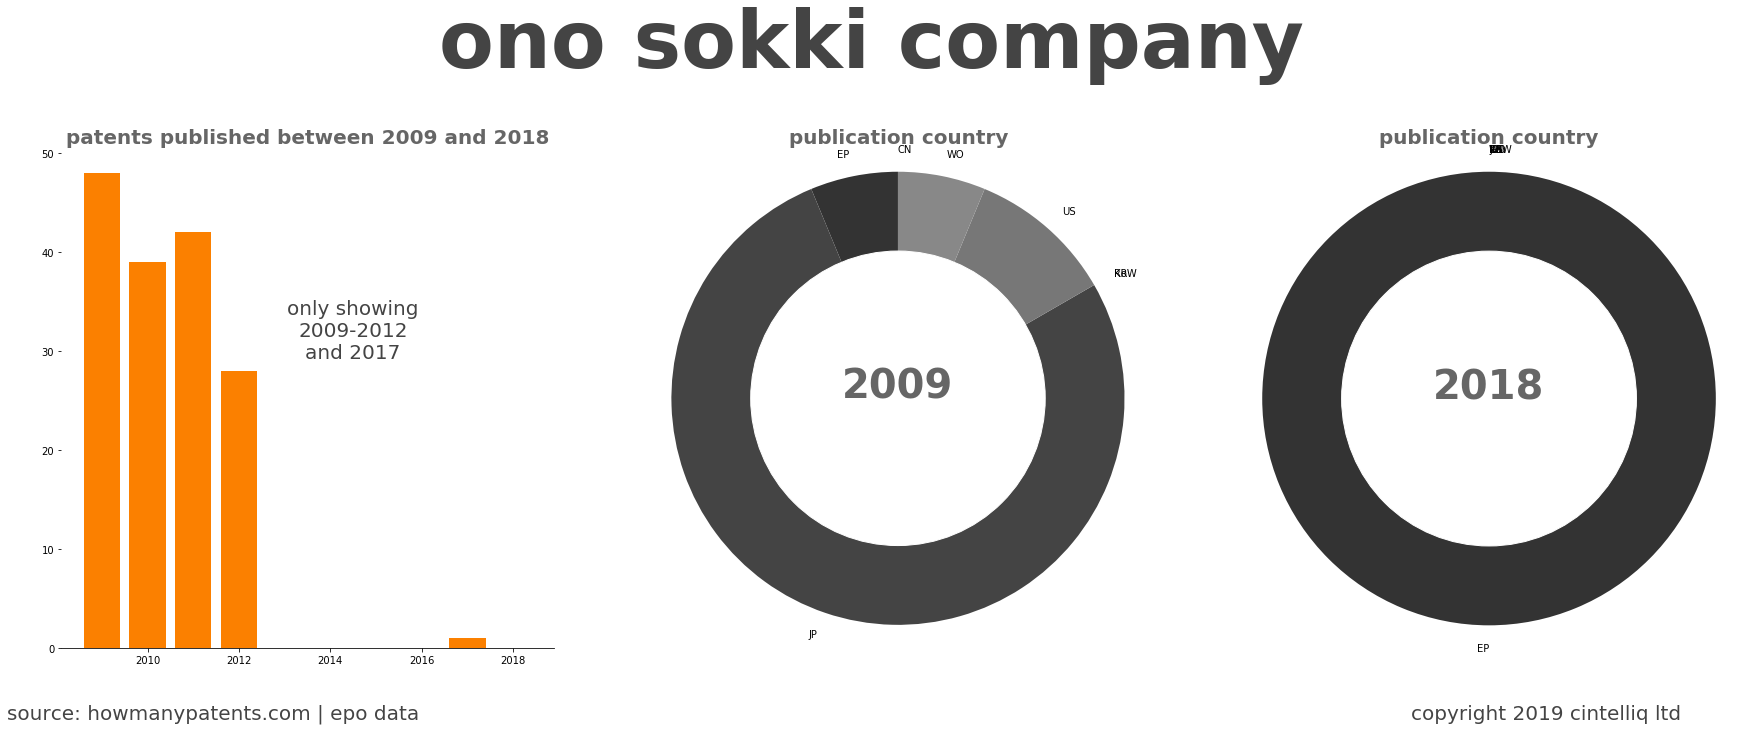 summary of patents for Ono Sokki Company